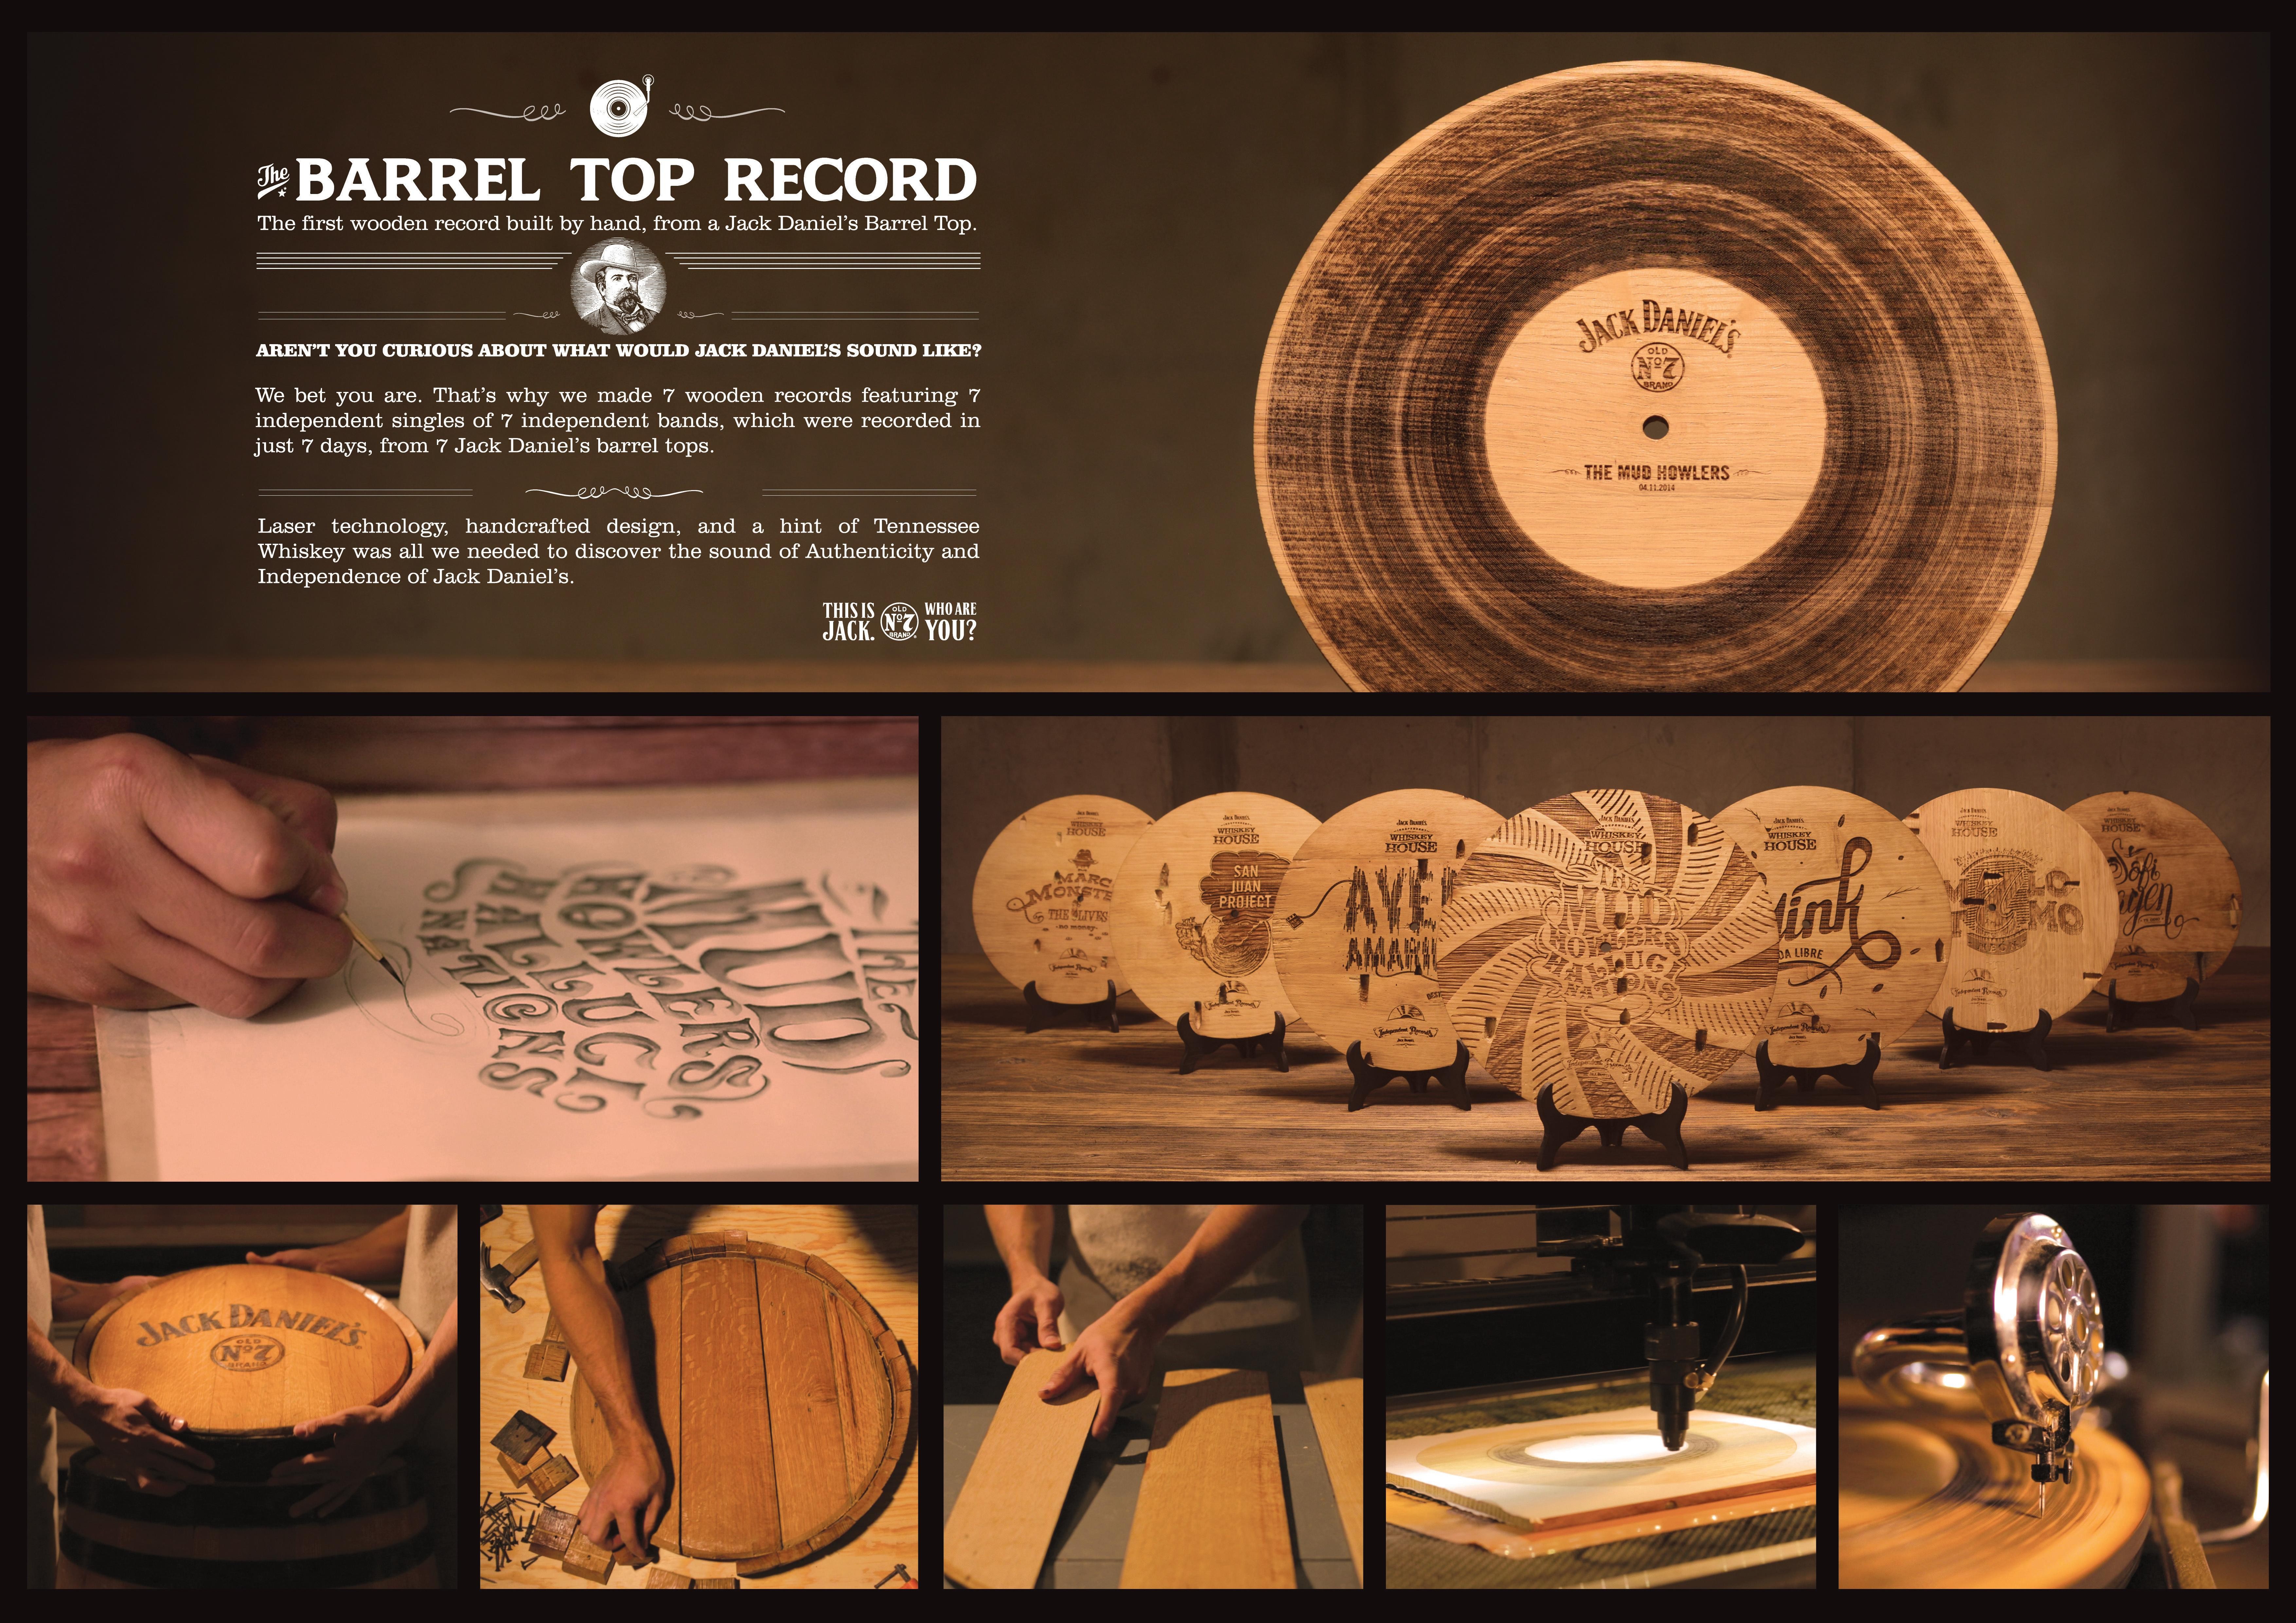 THE BARREL TOP RECORD